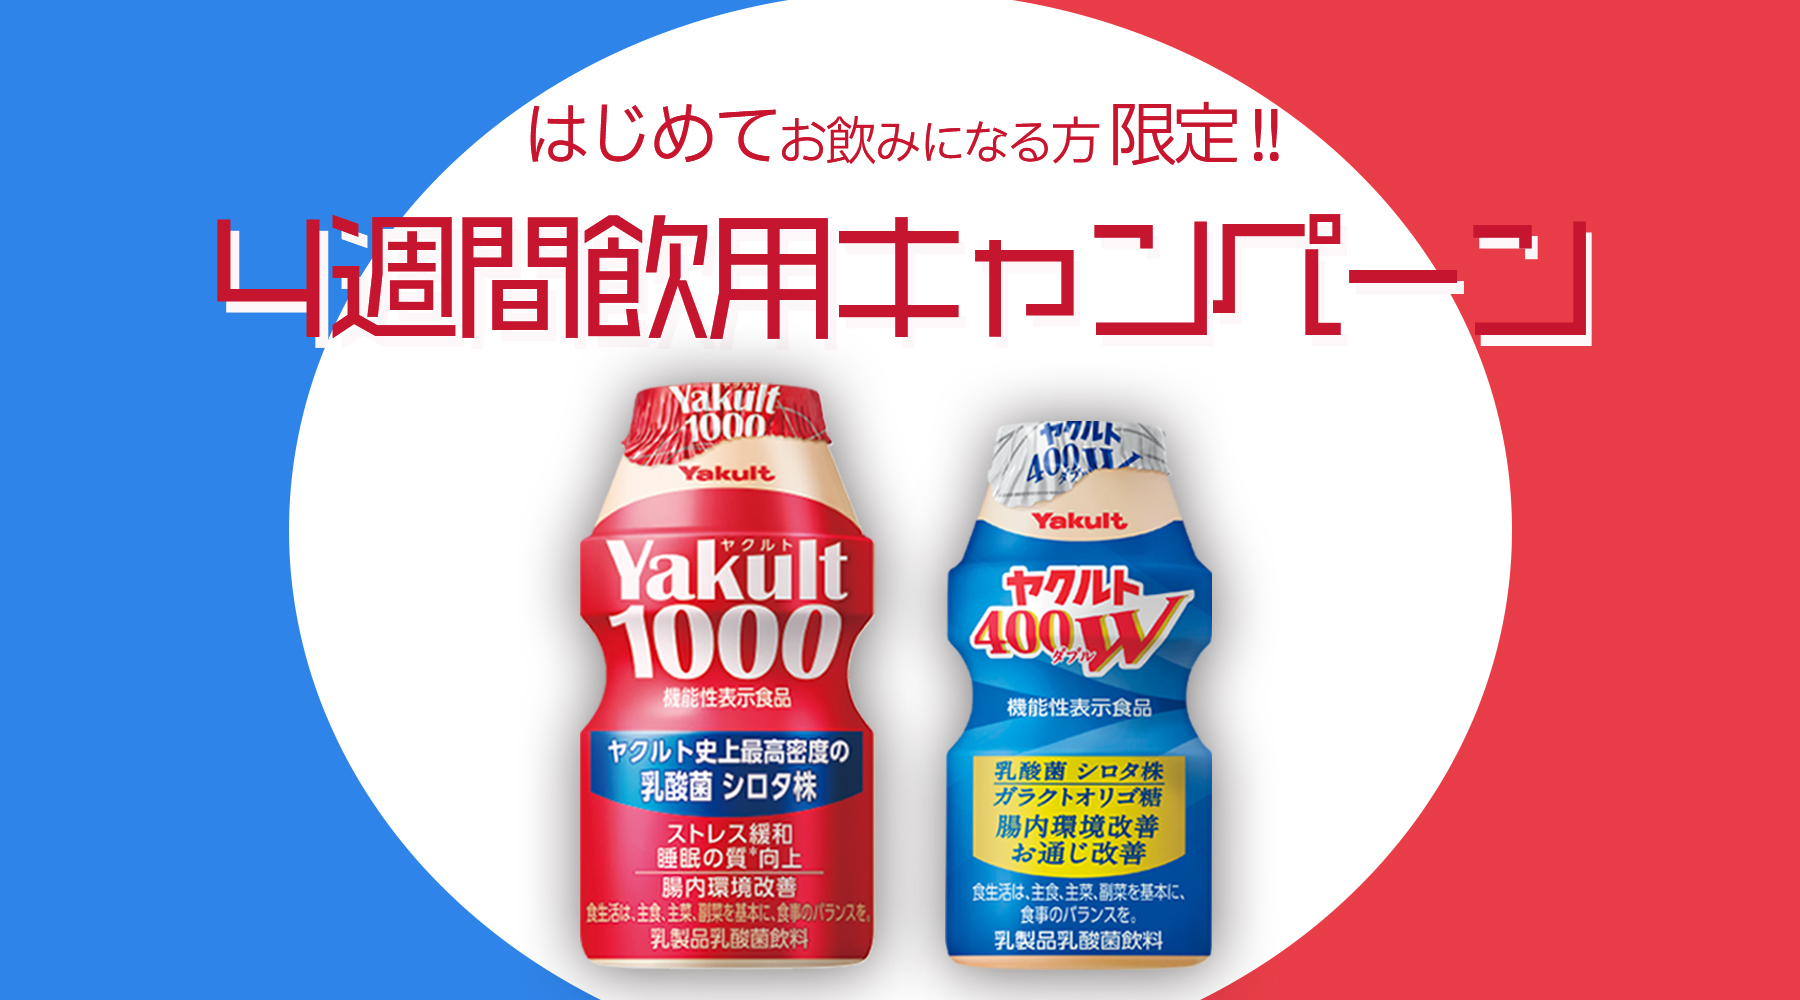 Yakult(ヤクルト)1000・400W 4週間キャンペーン